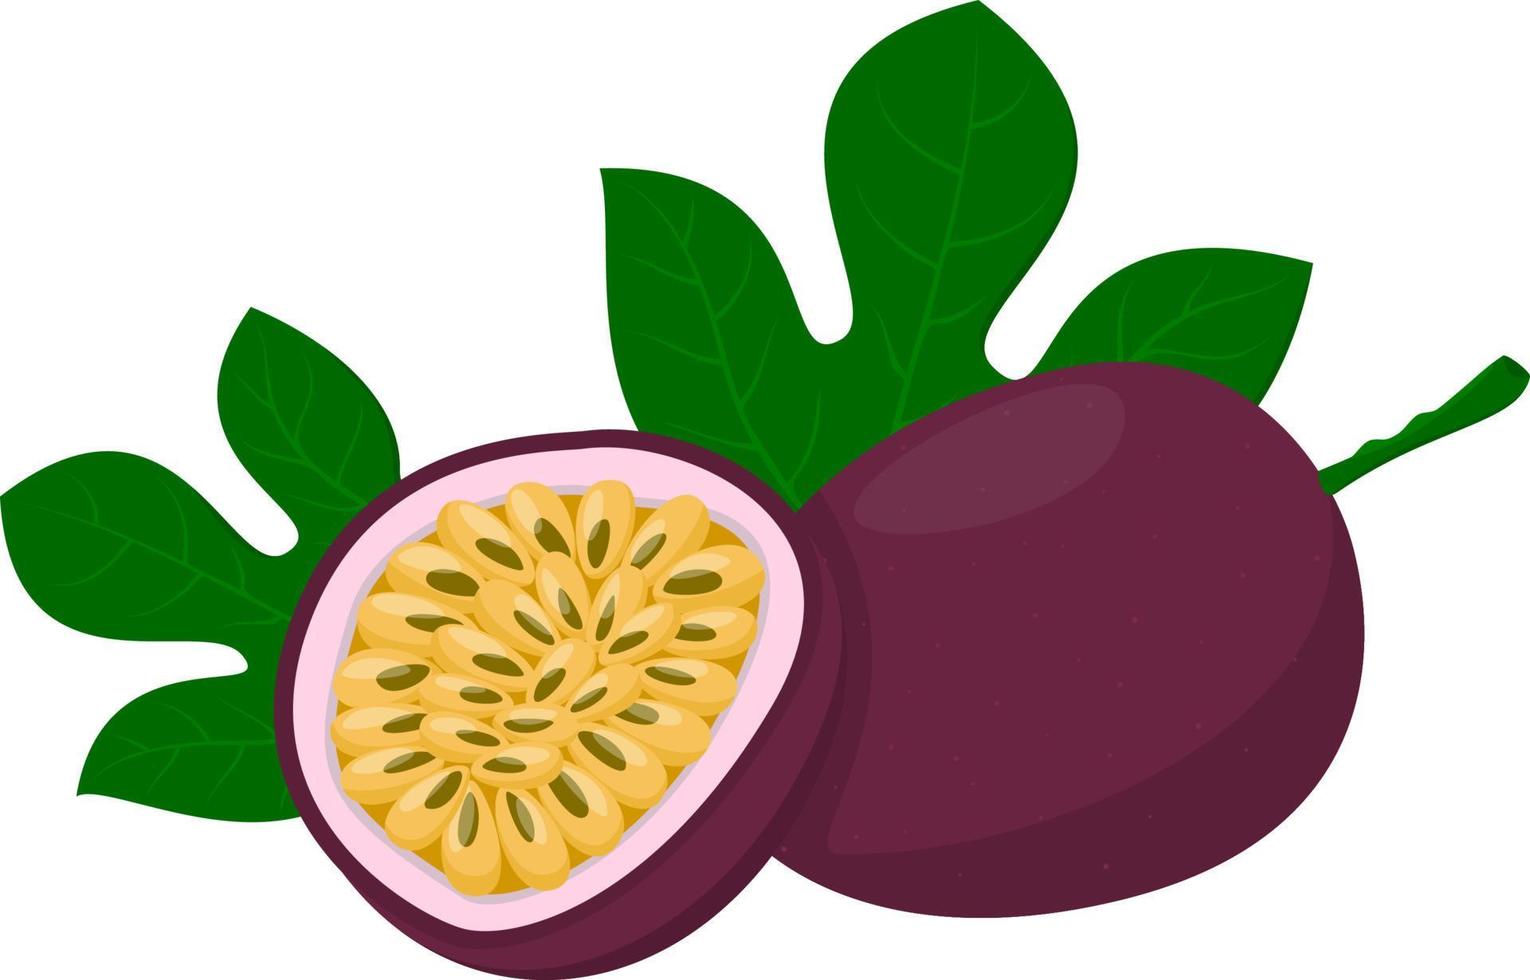 fruta de la pasión entera con fruta de la pasión a la mitad. estilo de dibujos animados ilustración vectorial aislado sobre fondo blanco vector